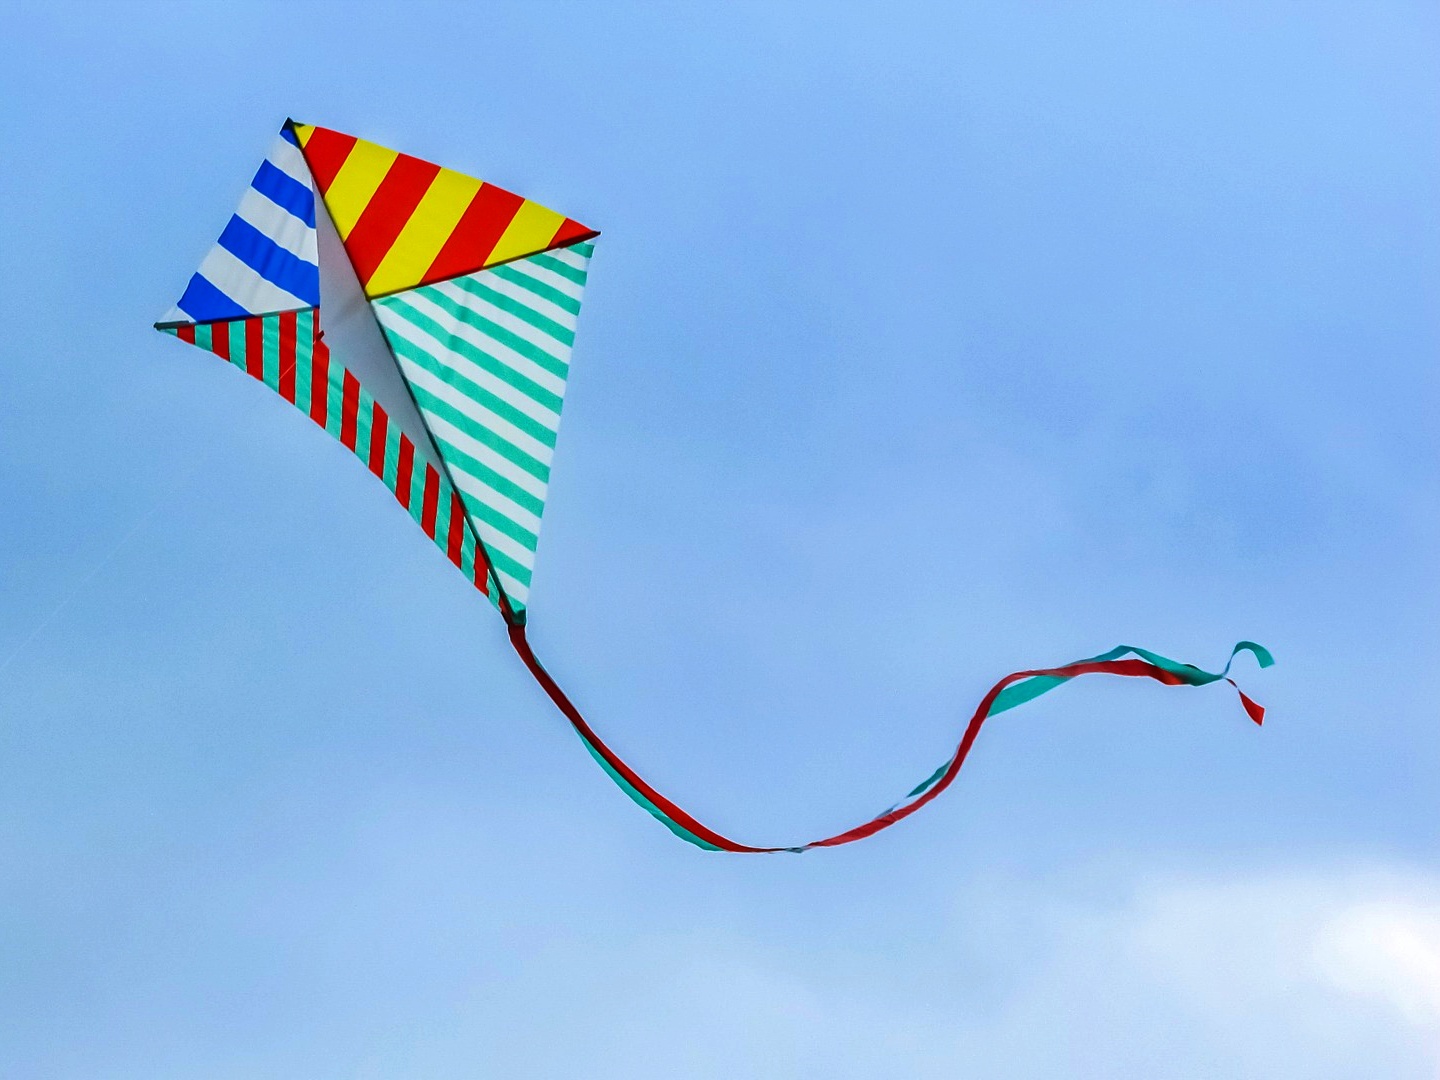 【上山城体験教室】手づくり凧に絵を描いて揚げよう